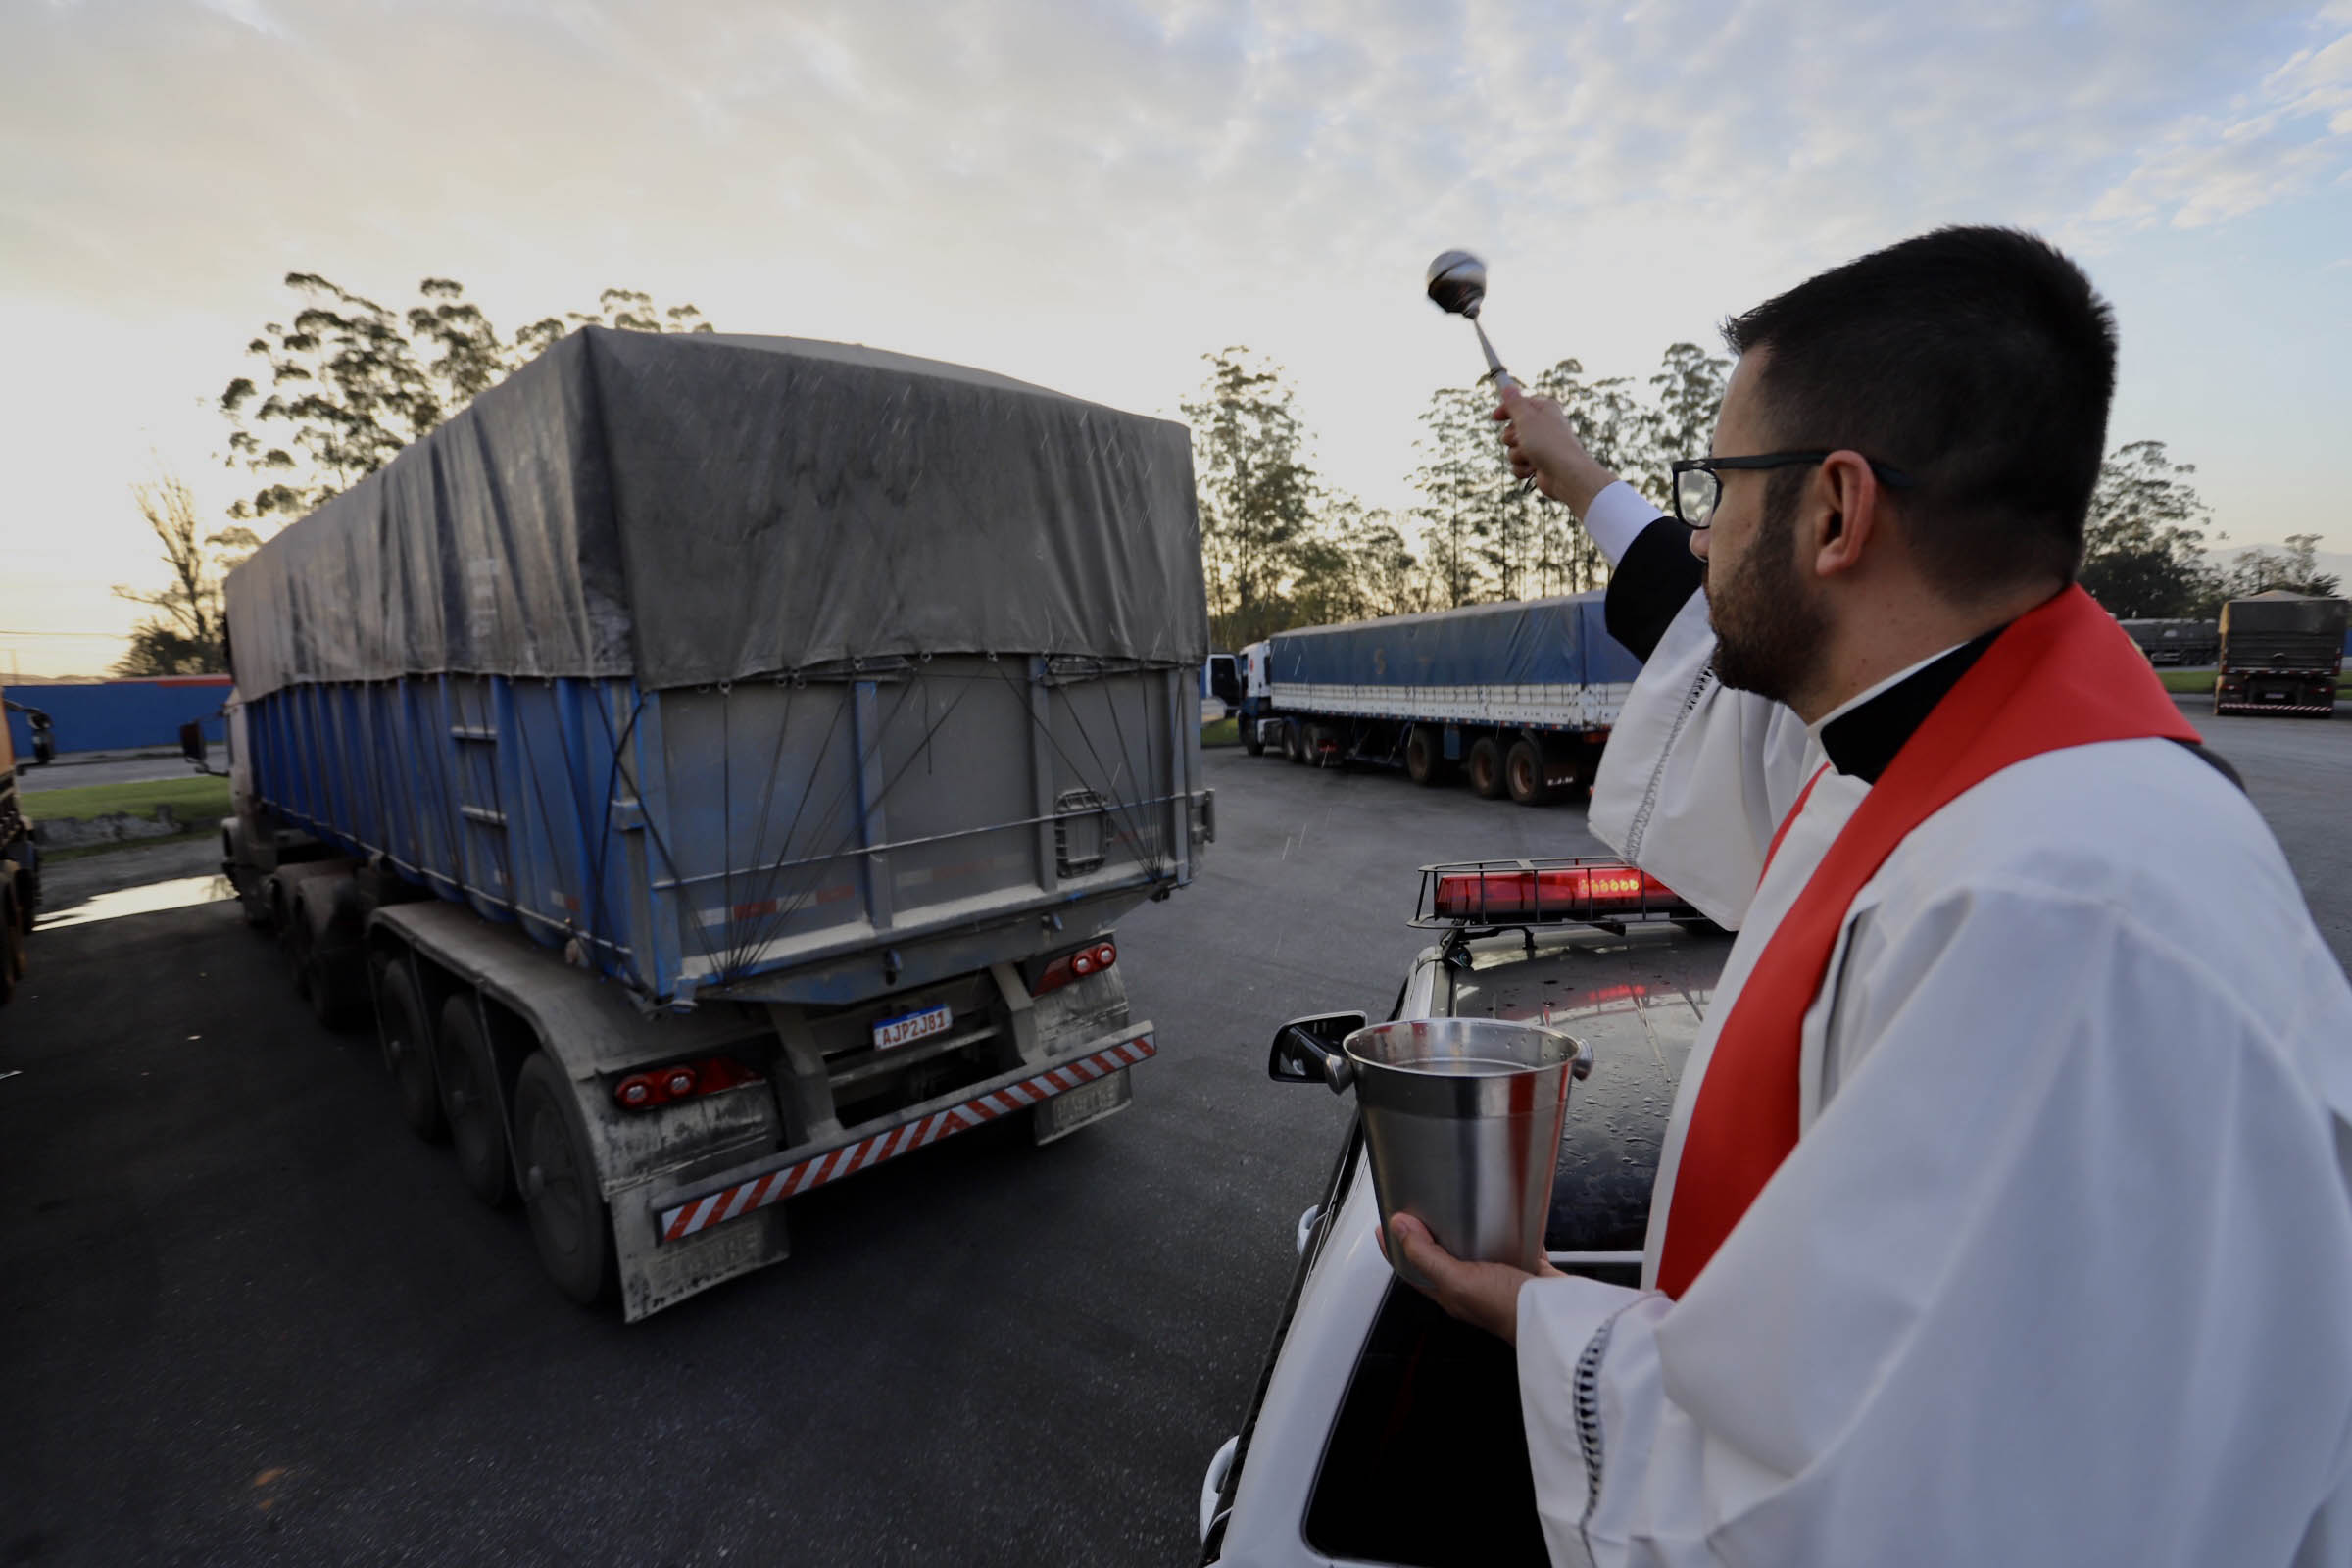 No Porto de Paranaguá, caminhoneiros recebem a bênção de São Cristóvão